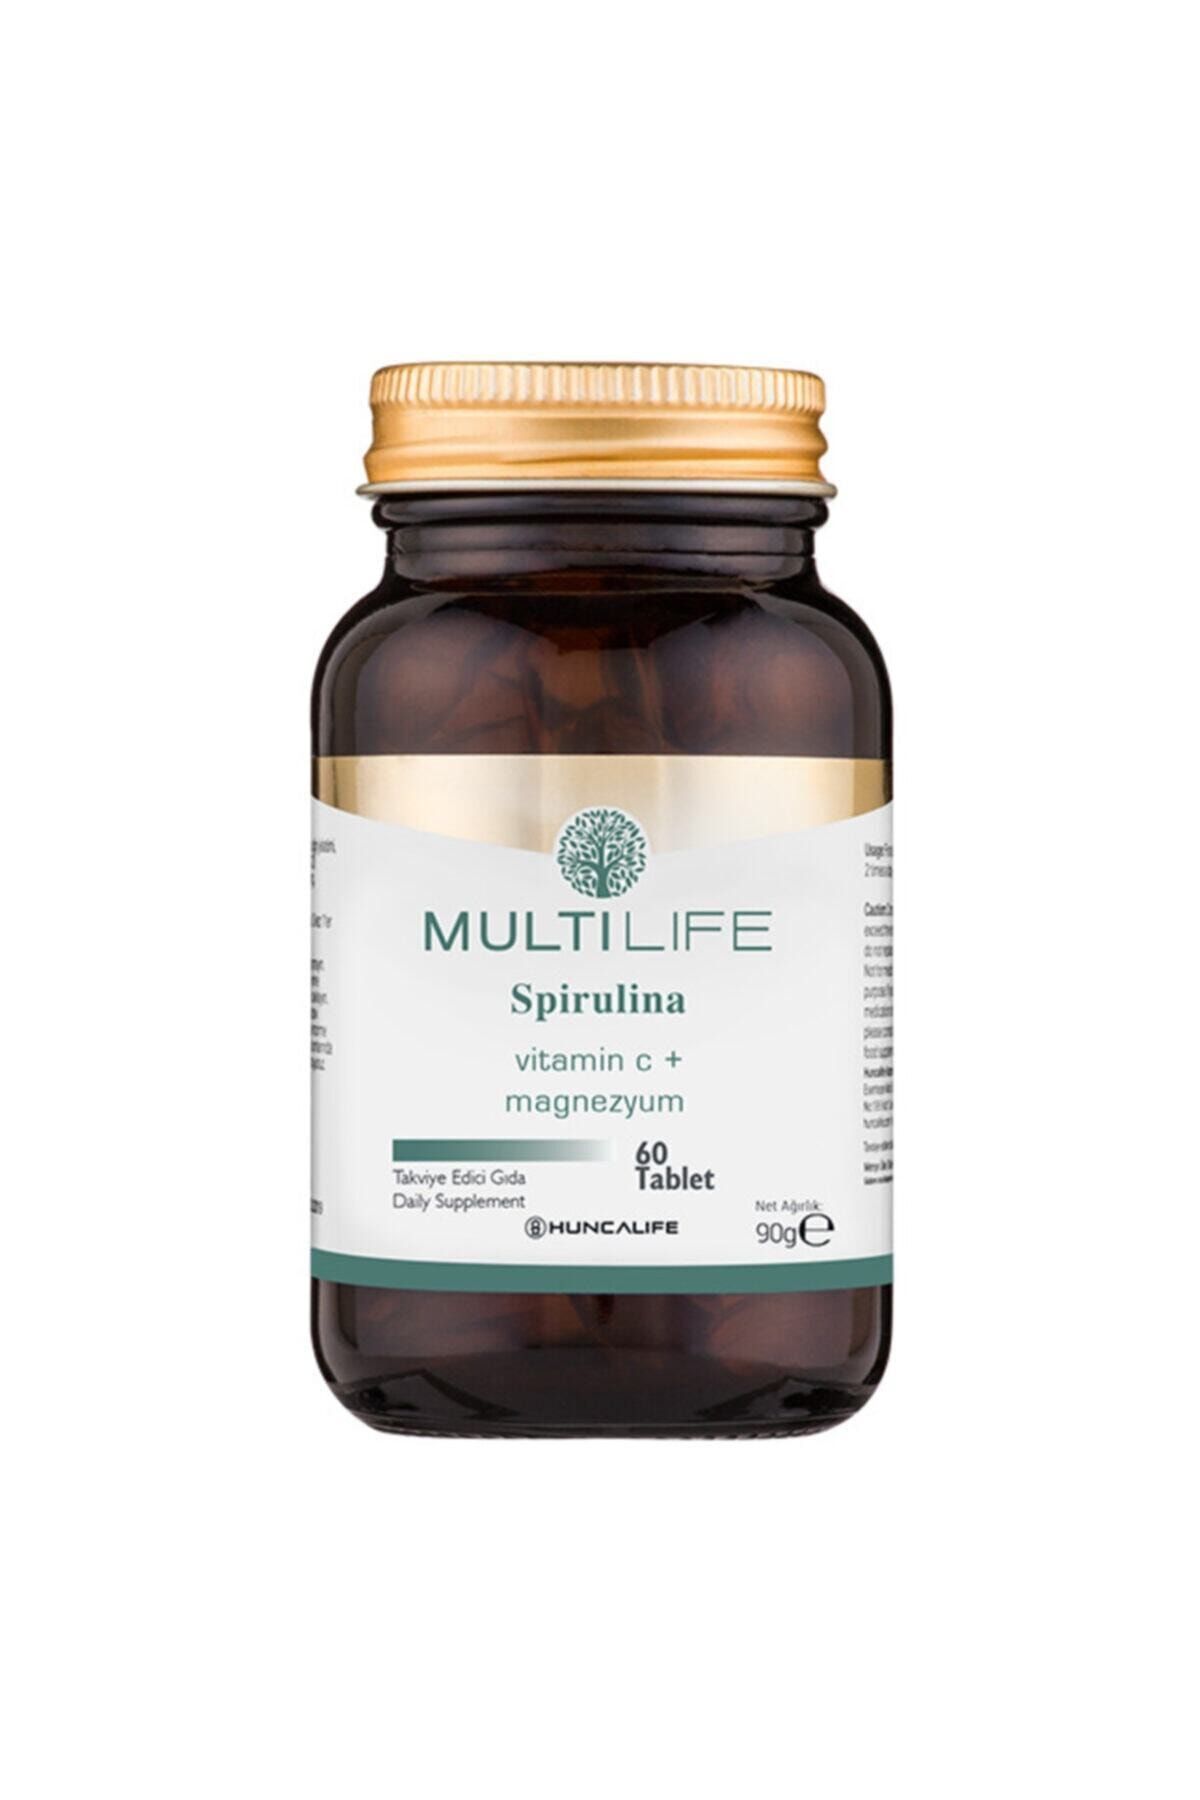 Huncalife Multilife Spirulina 60 Tablet Takviye Edici Gıda